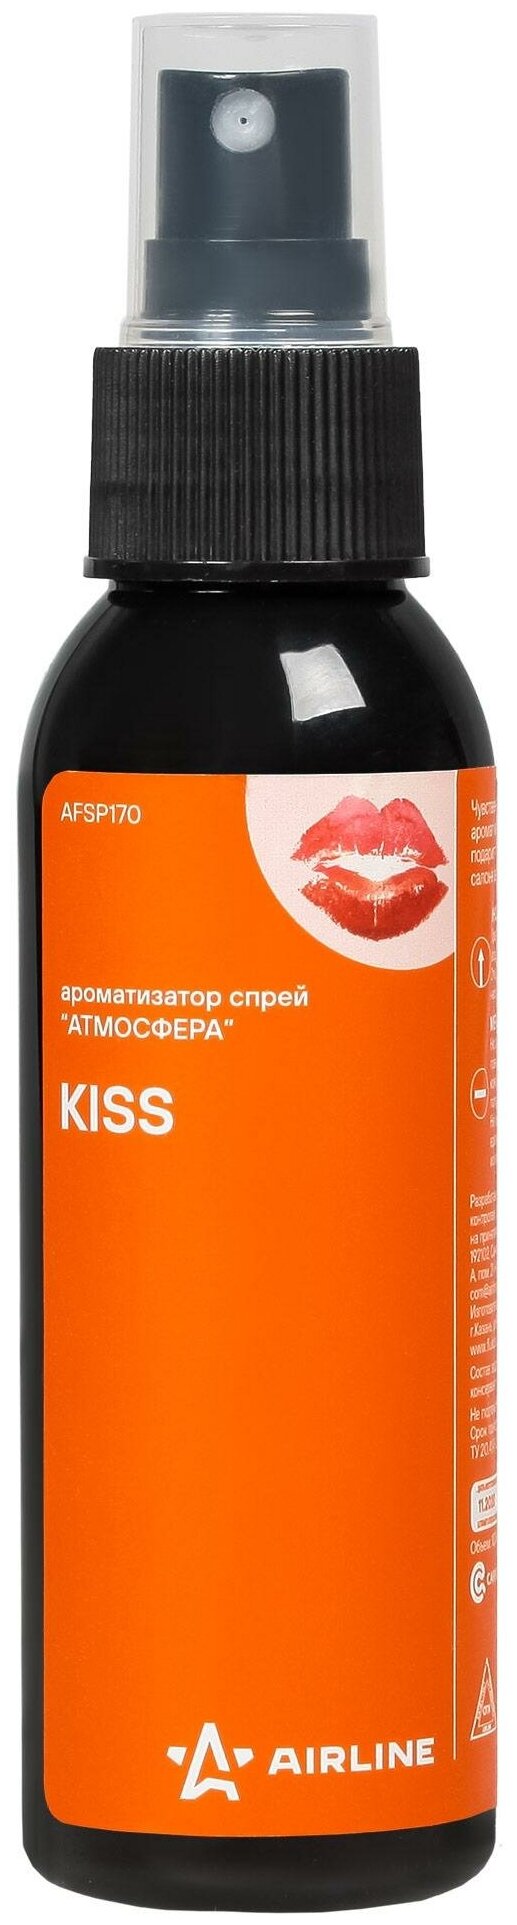 Ароматизатор-спрей "Атмосфера" kiss 100мл AIRLINE - фото №4